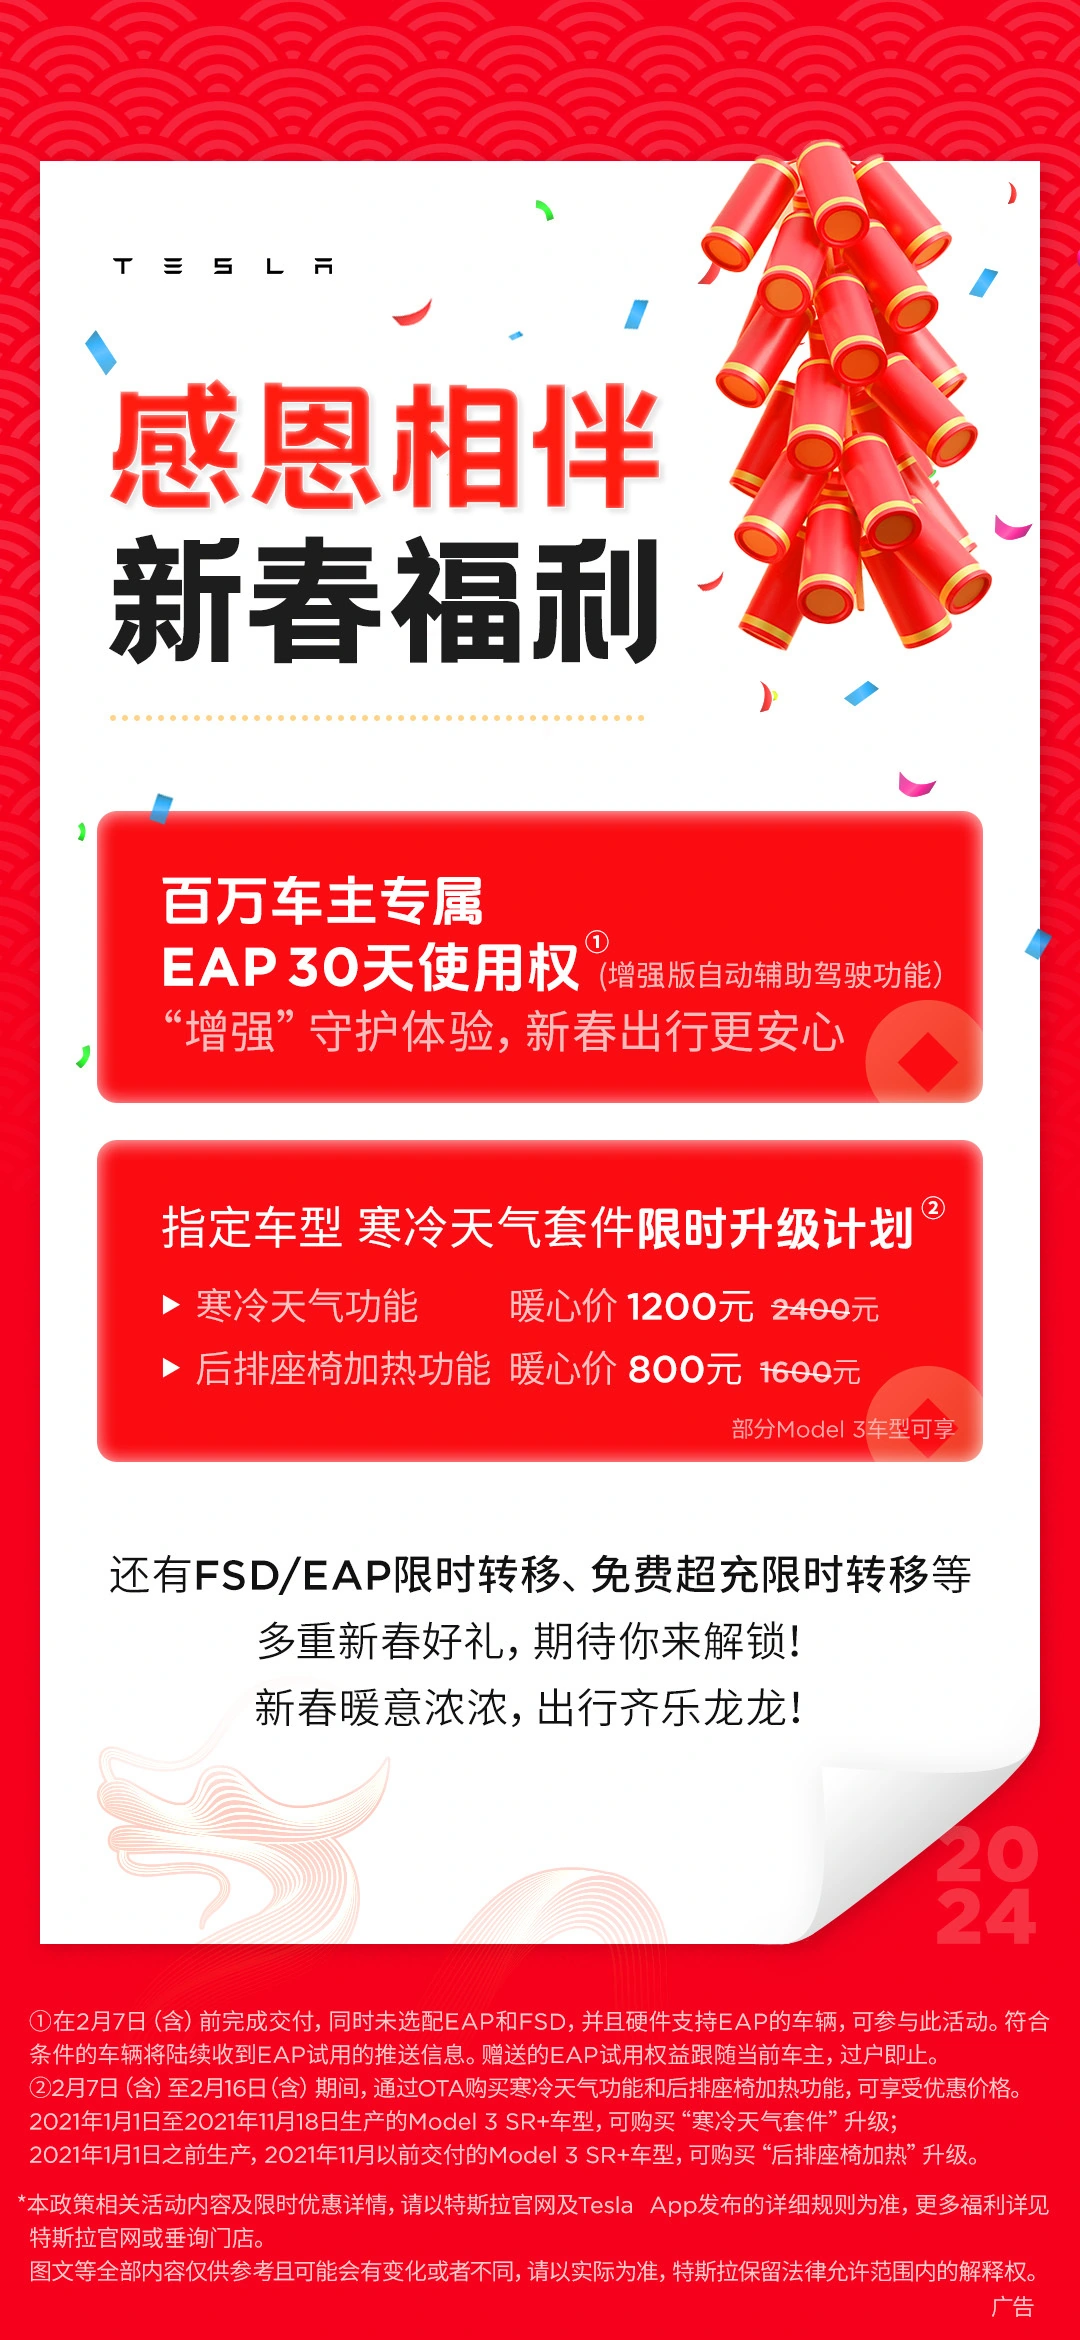 特斯拉中国赠送 30 天免费 EAP 使用权，部分 Model 3 可半价购买寒冷天气套件